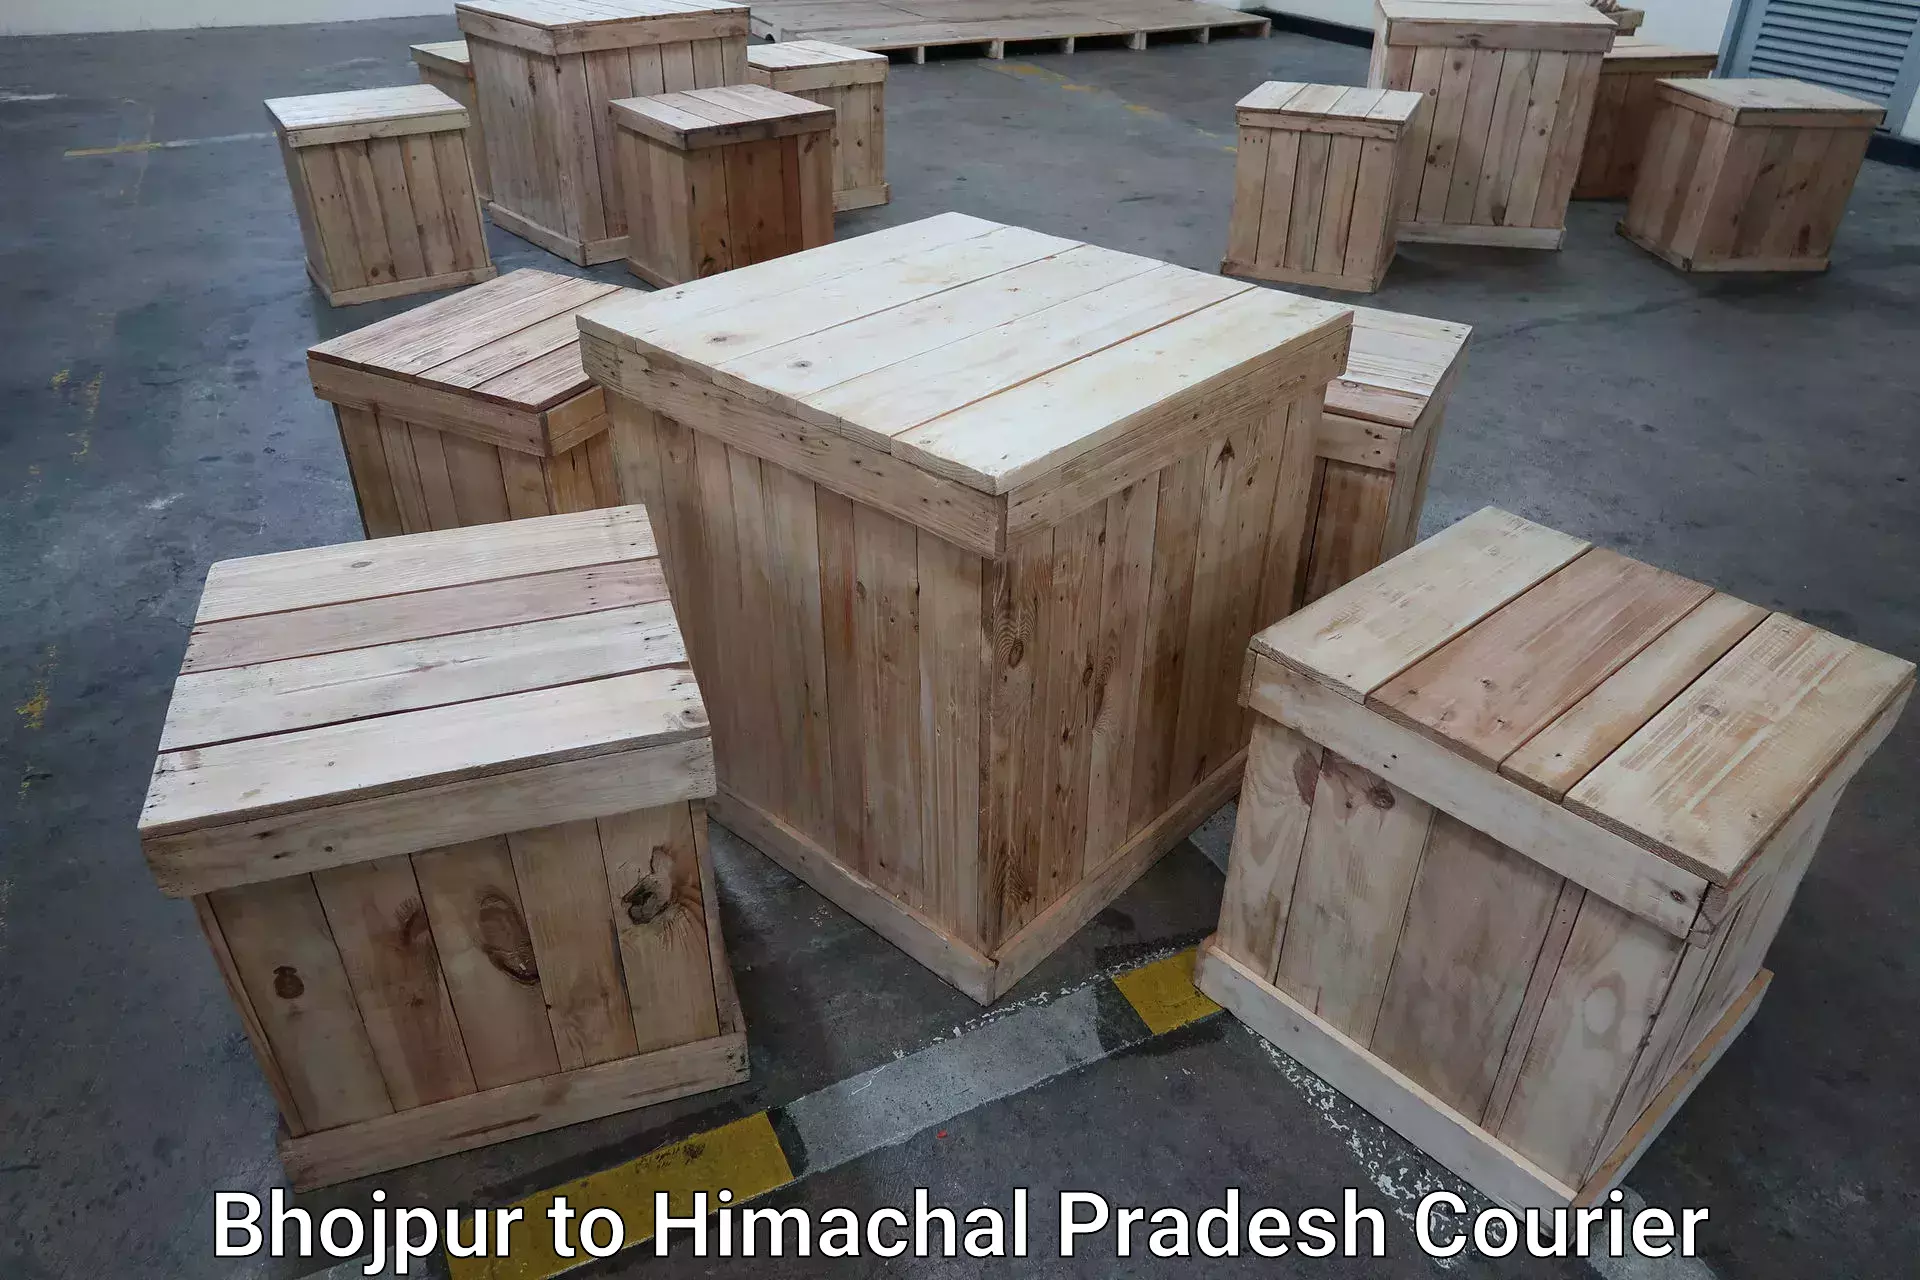 Luggage shipment strategy Bhojpur to Jukhala